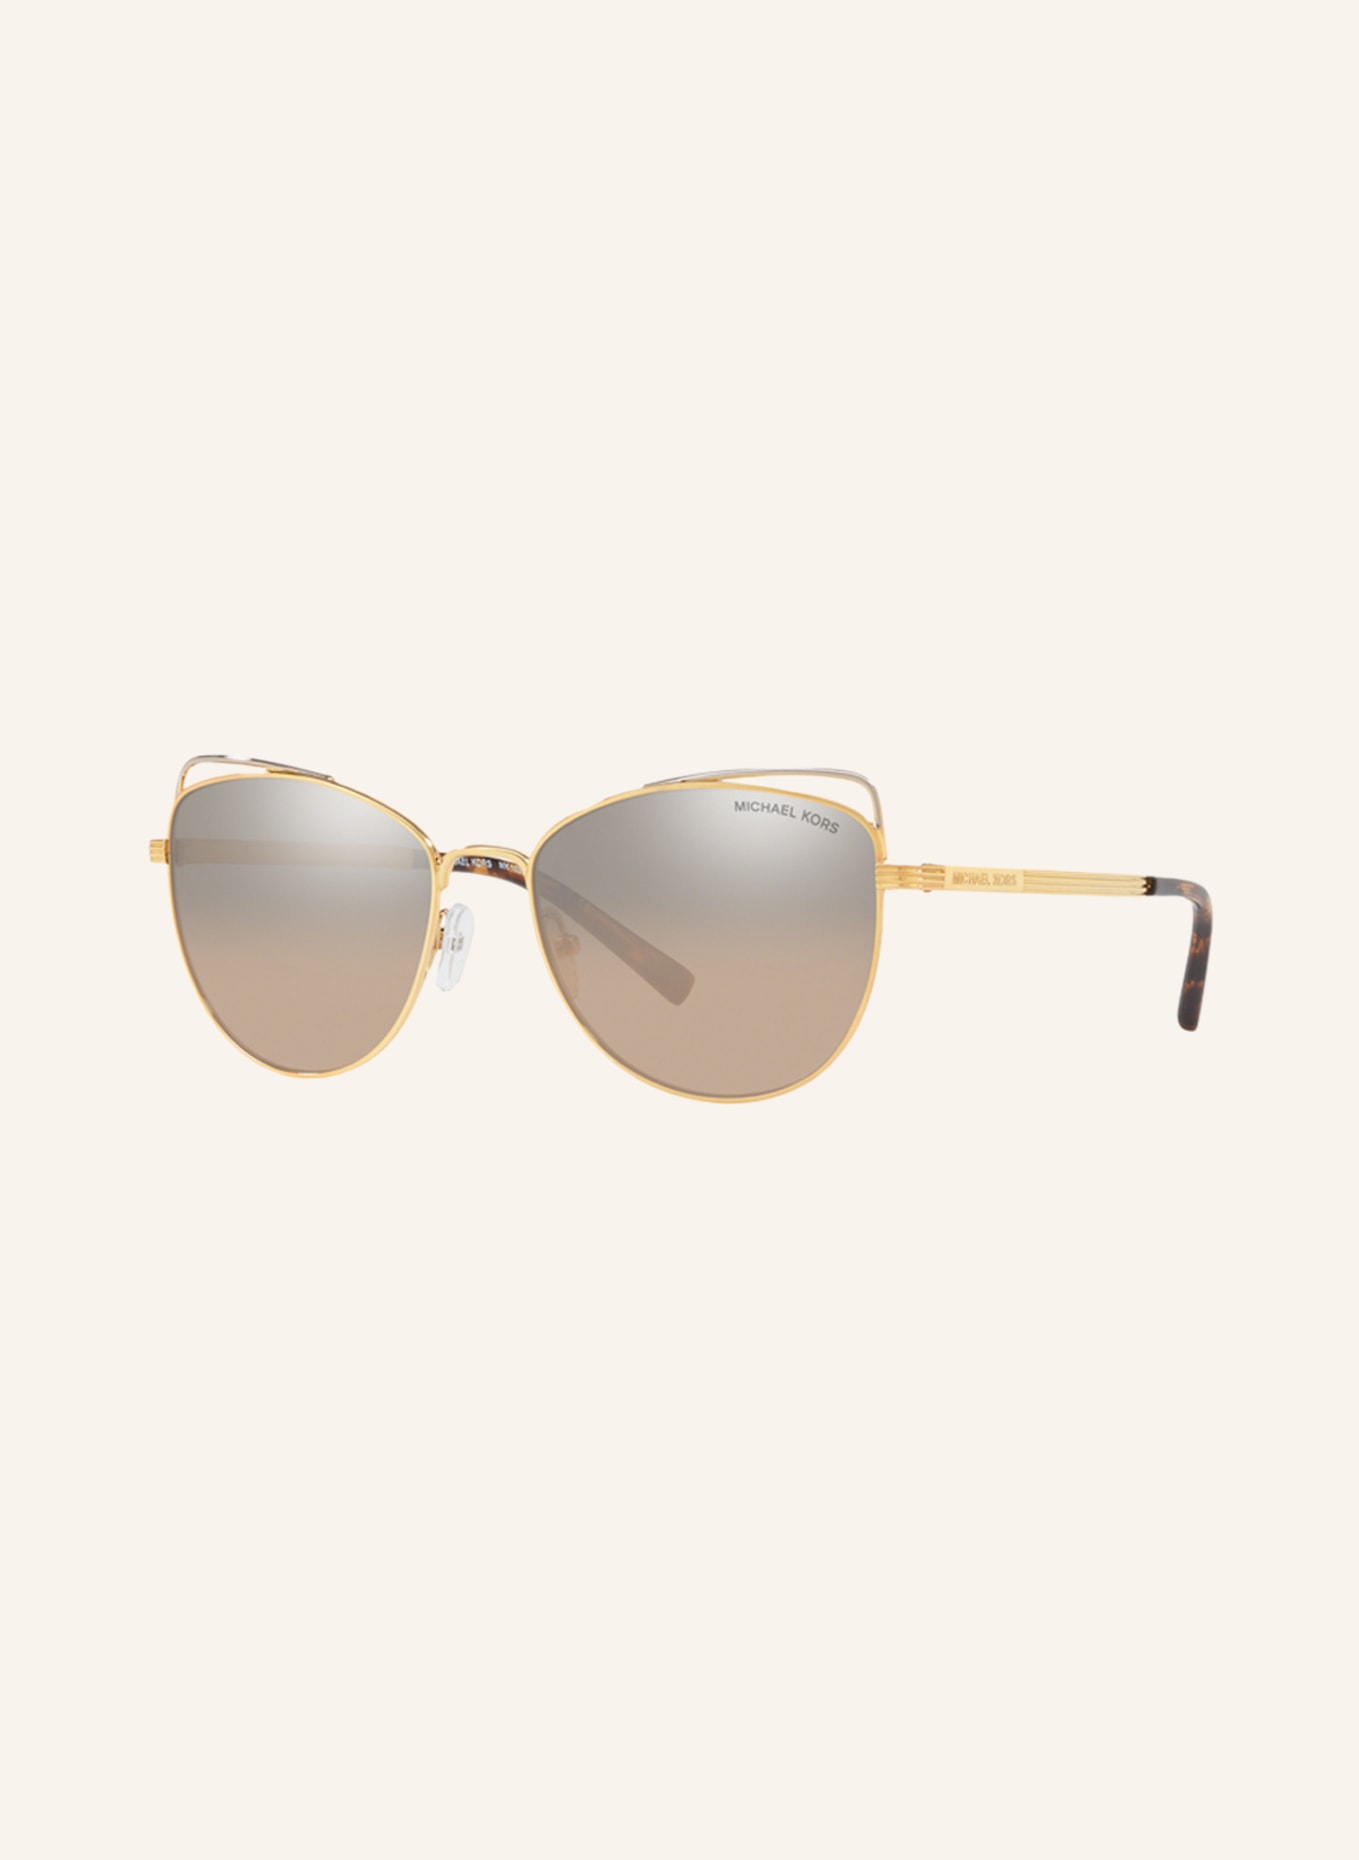 NWT Michael Kors Sunglasses MK 5004 1017R1 Rose GoldMirrored Rose Gold  59mm NIB  Order hàng xách tay Mỹ uy tín